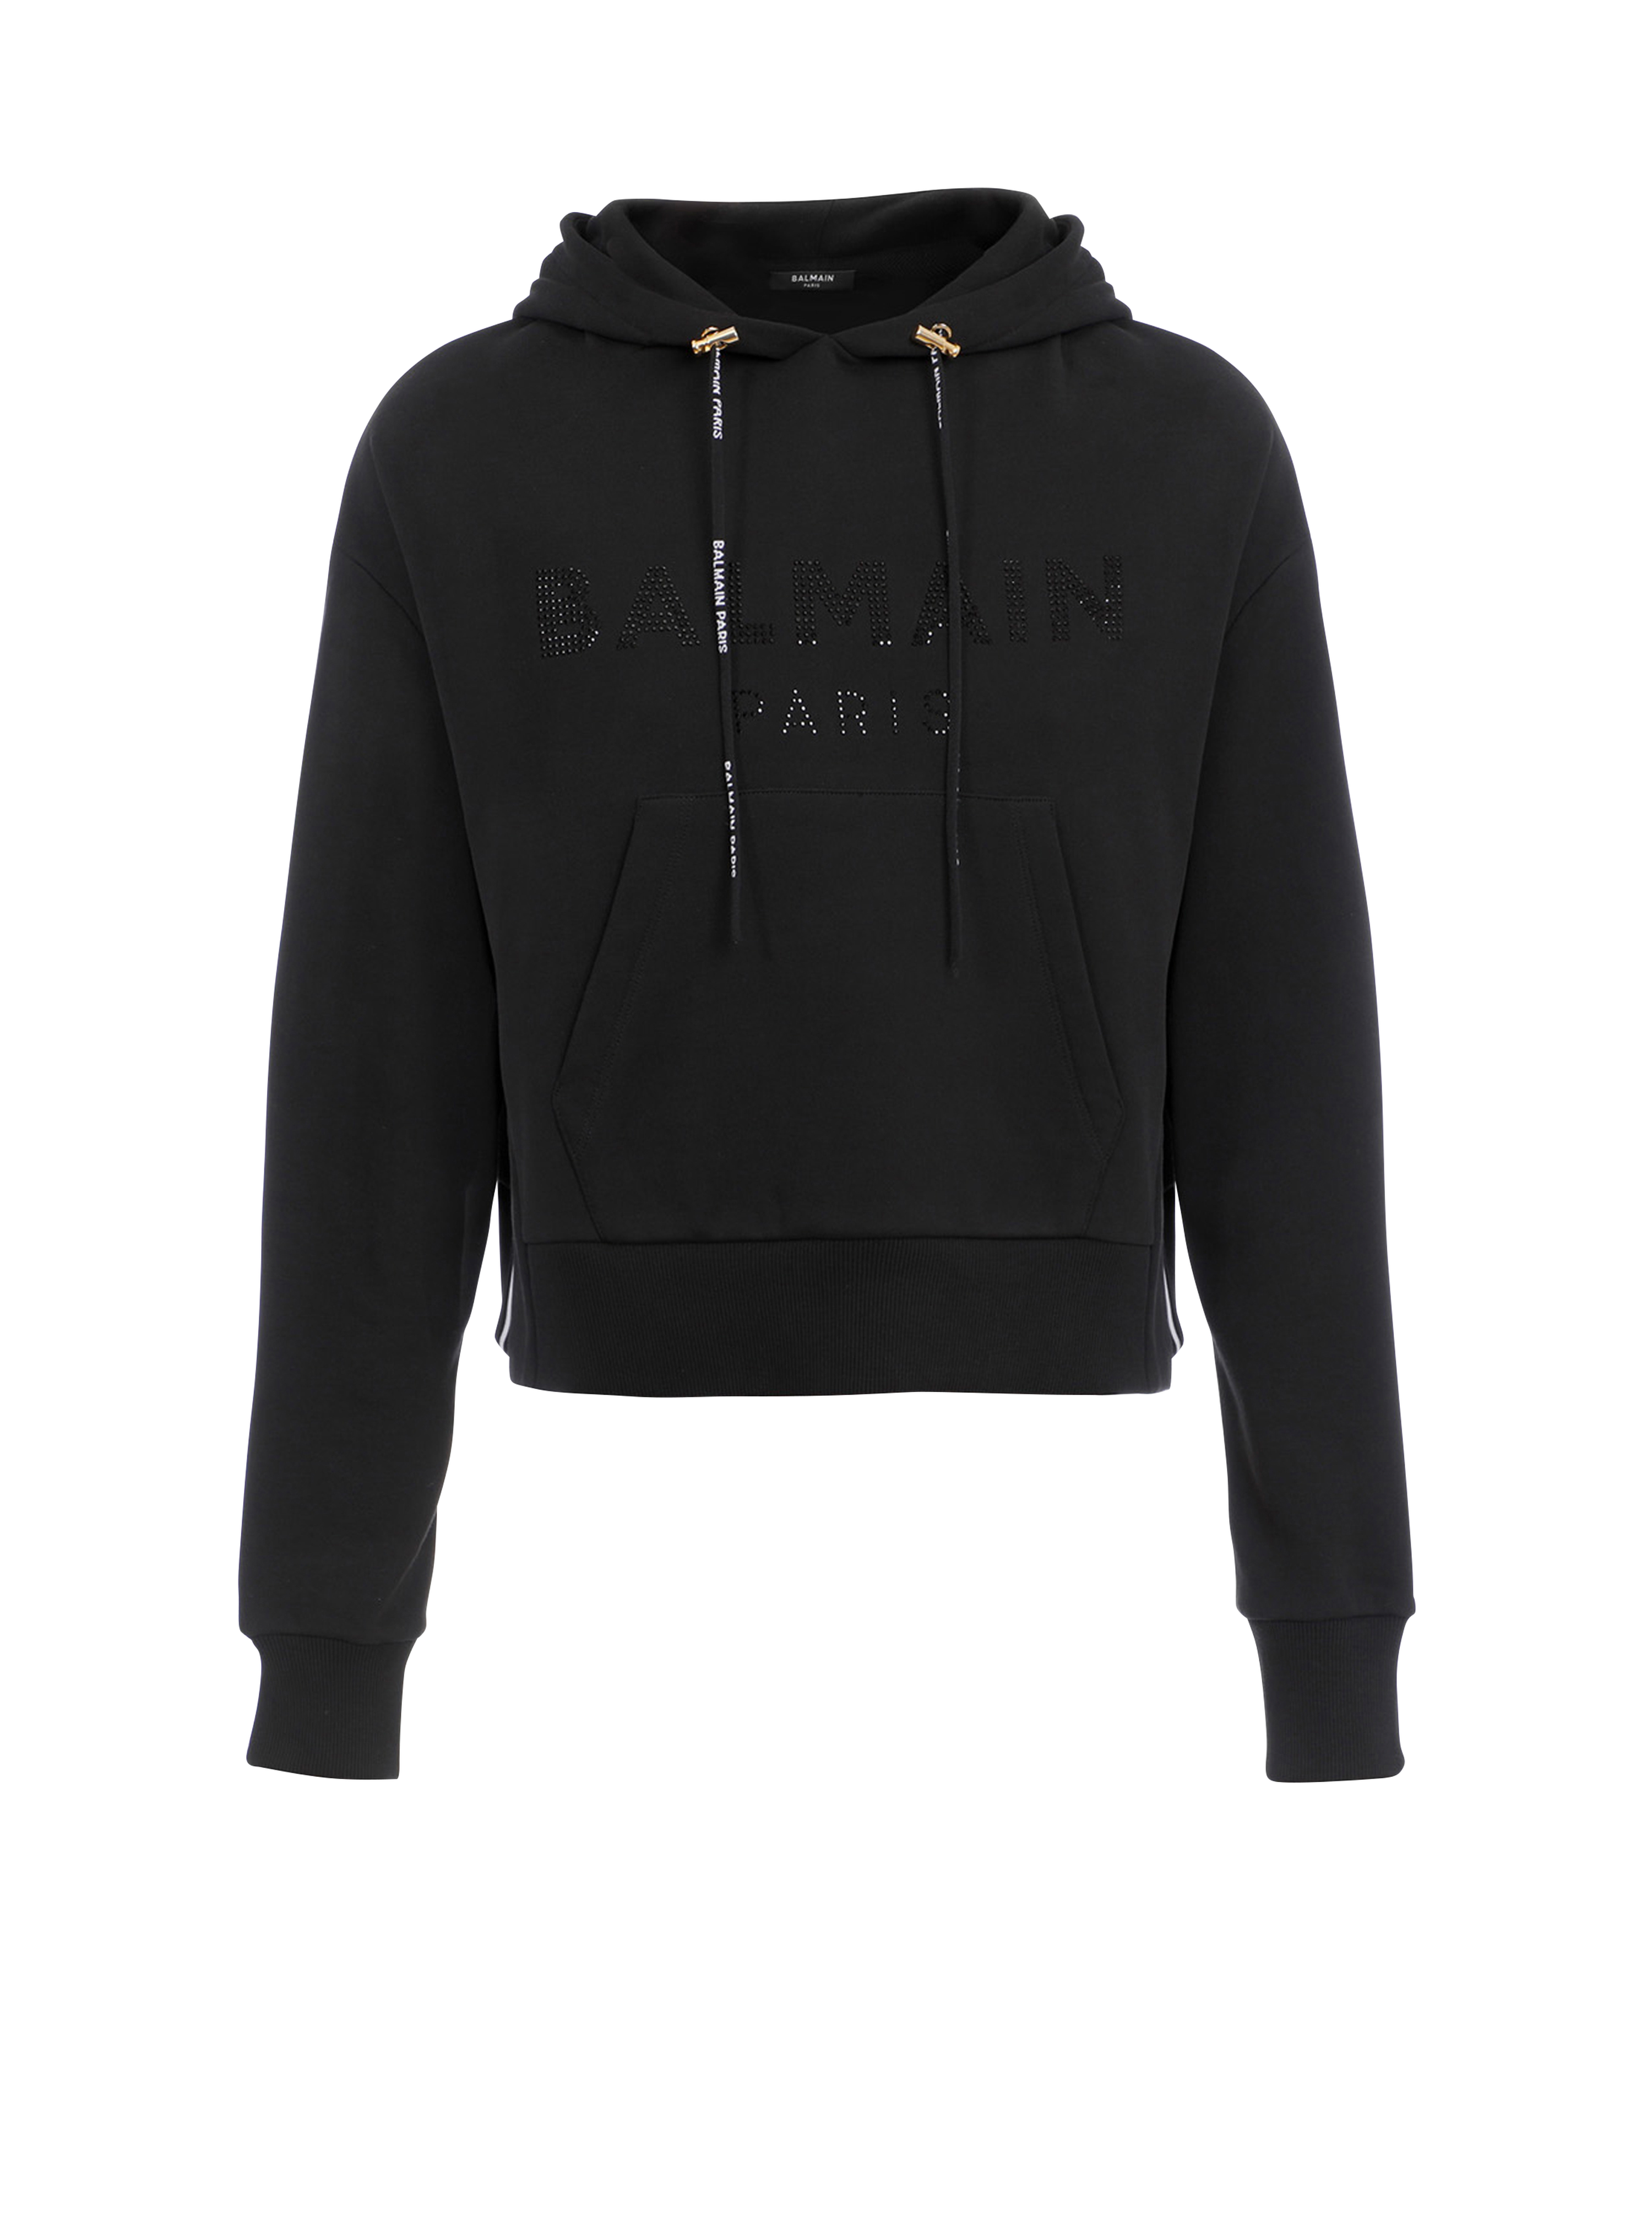 Cropped eco-designed cotton sweatshirt with rhinestone Balmain logo, black